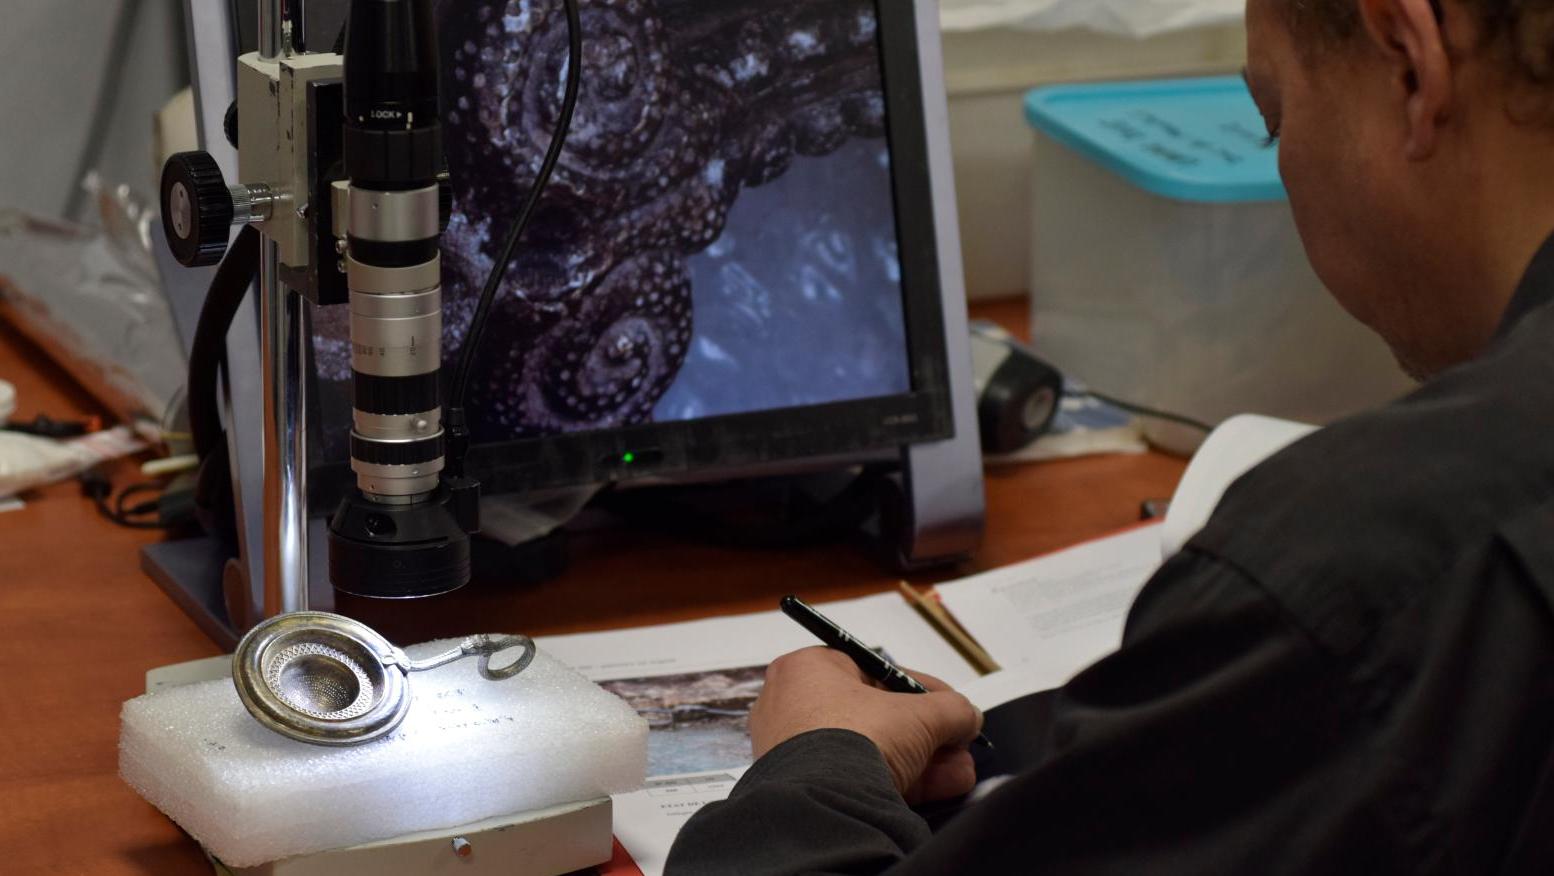 Étude d’une passoire en argent du trésor de Lavau par microscopie 3D. Science et patrimoine, la licorne ou la mule